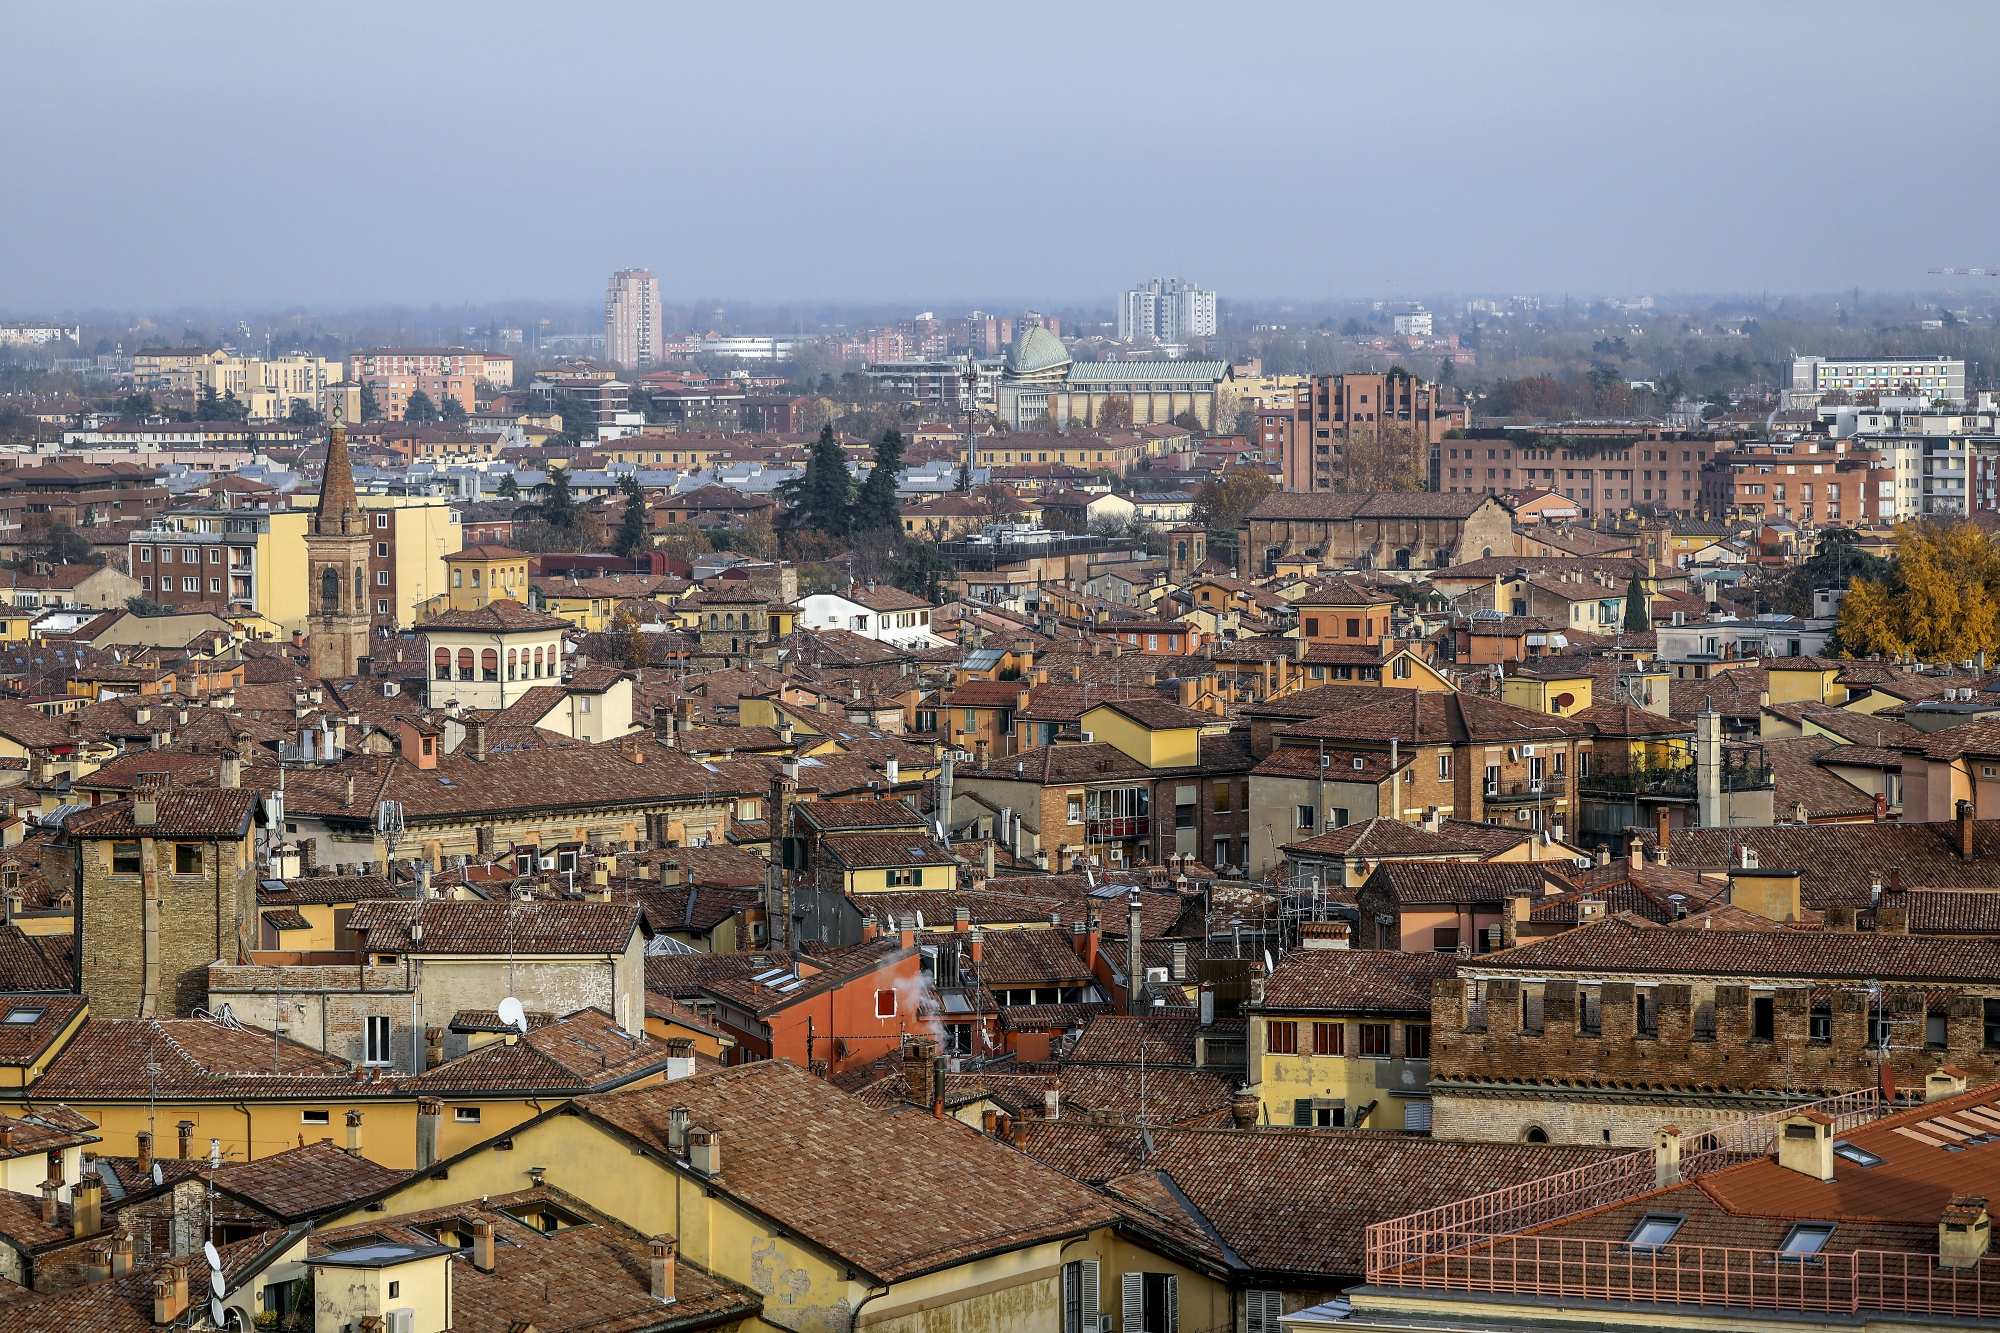 The skyline of Bologna from San Petronio terrace on&nbsp;Nov. 26.